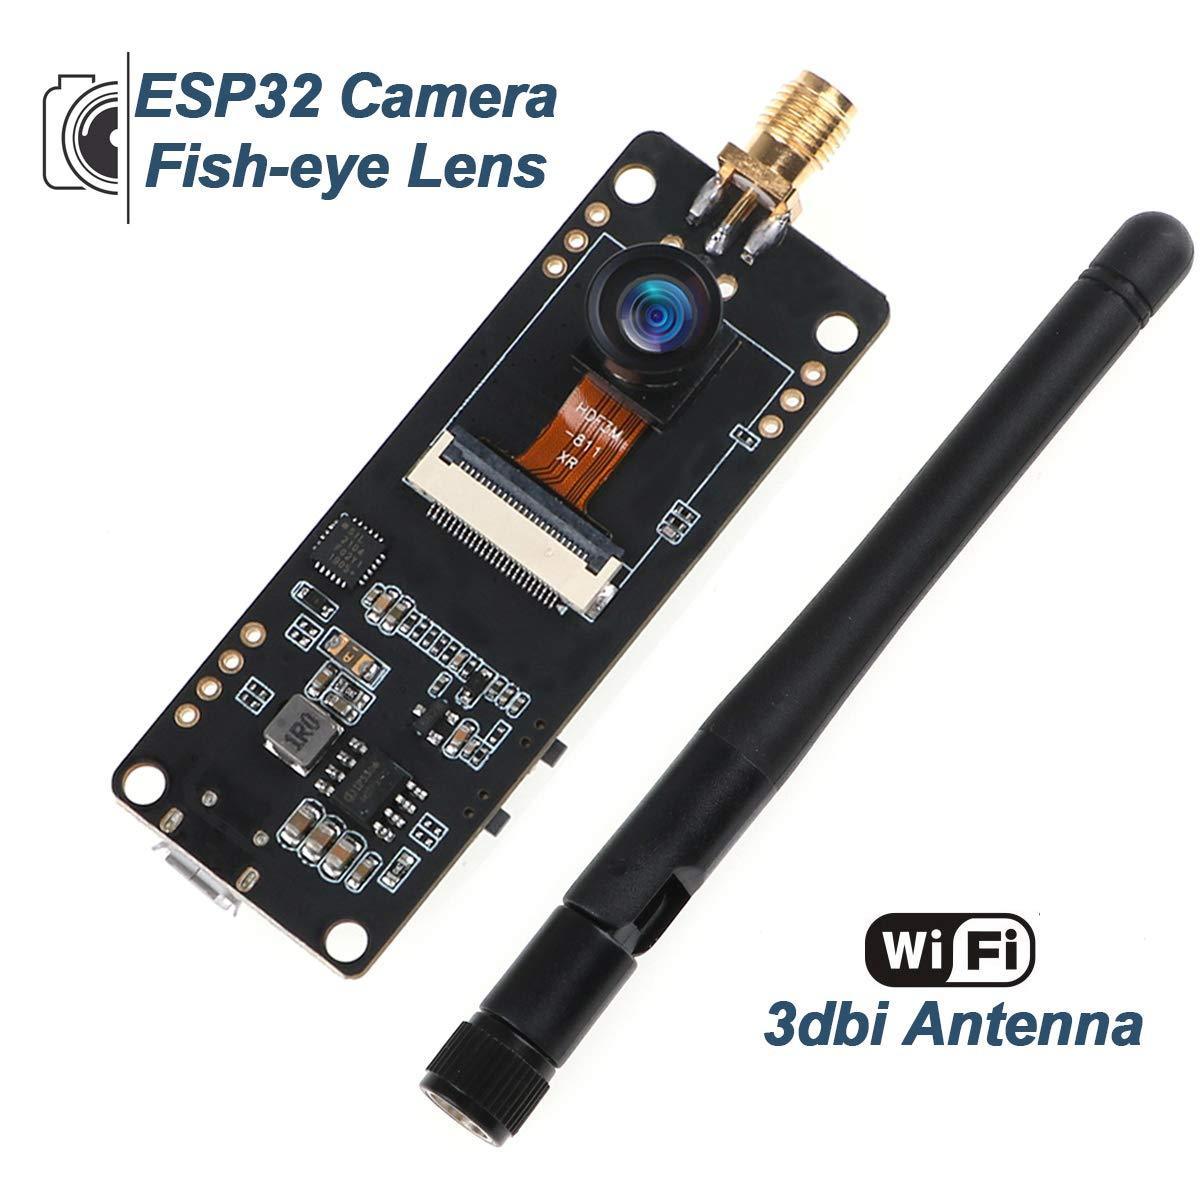 Mini Camera Mb Wifi Bluetooth Camera Module Development Kit Board Esp32  Micro Cam Met Camera Module 